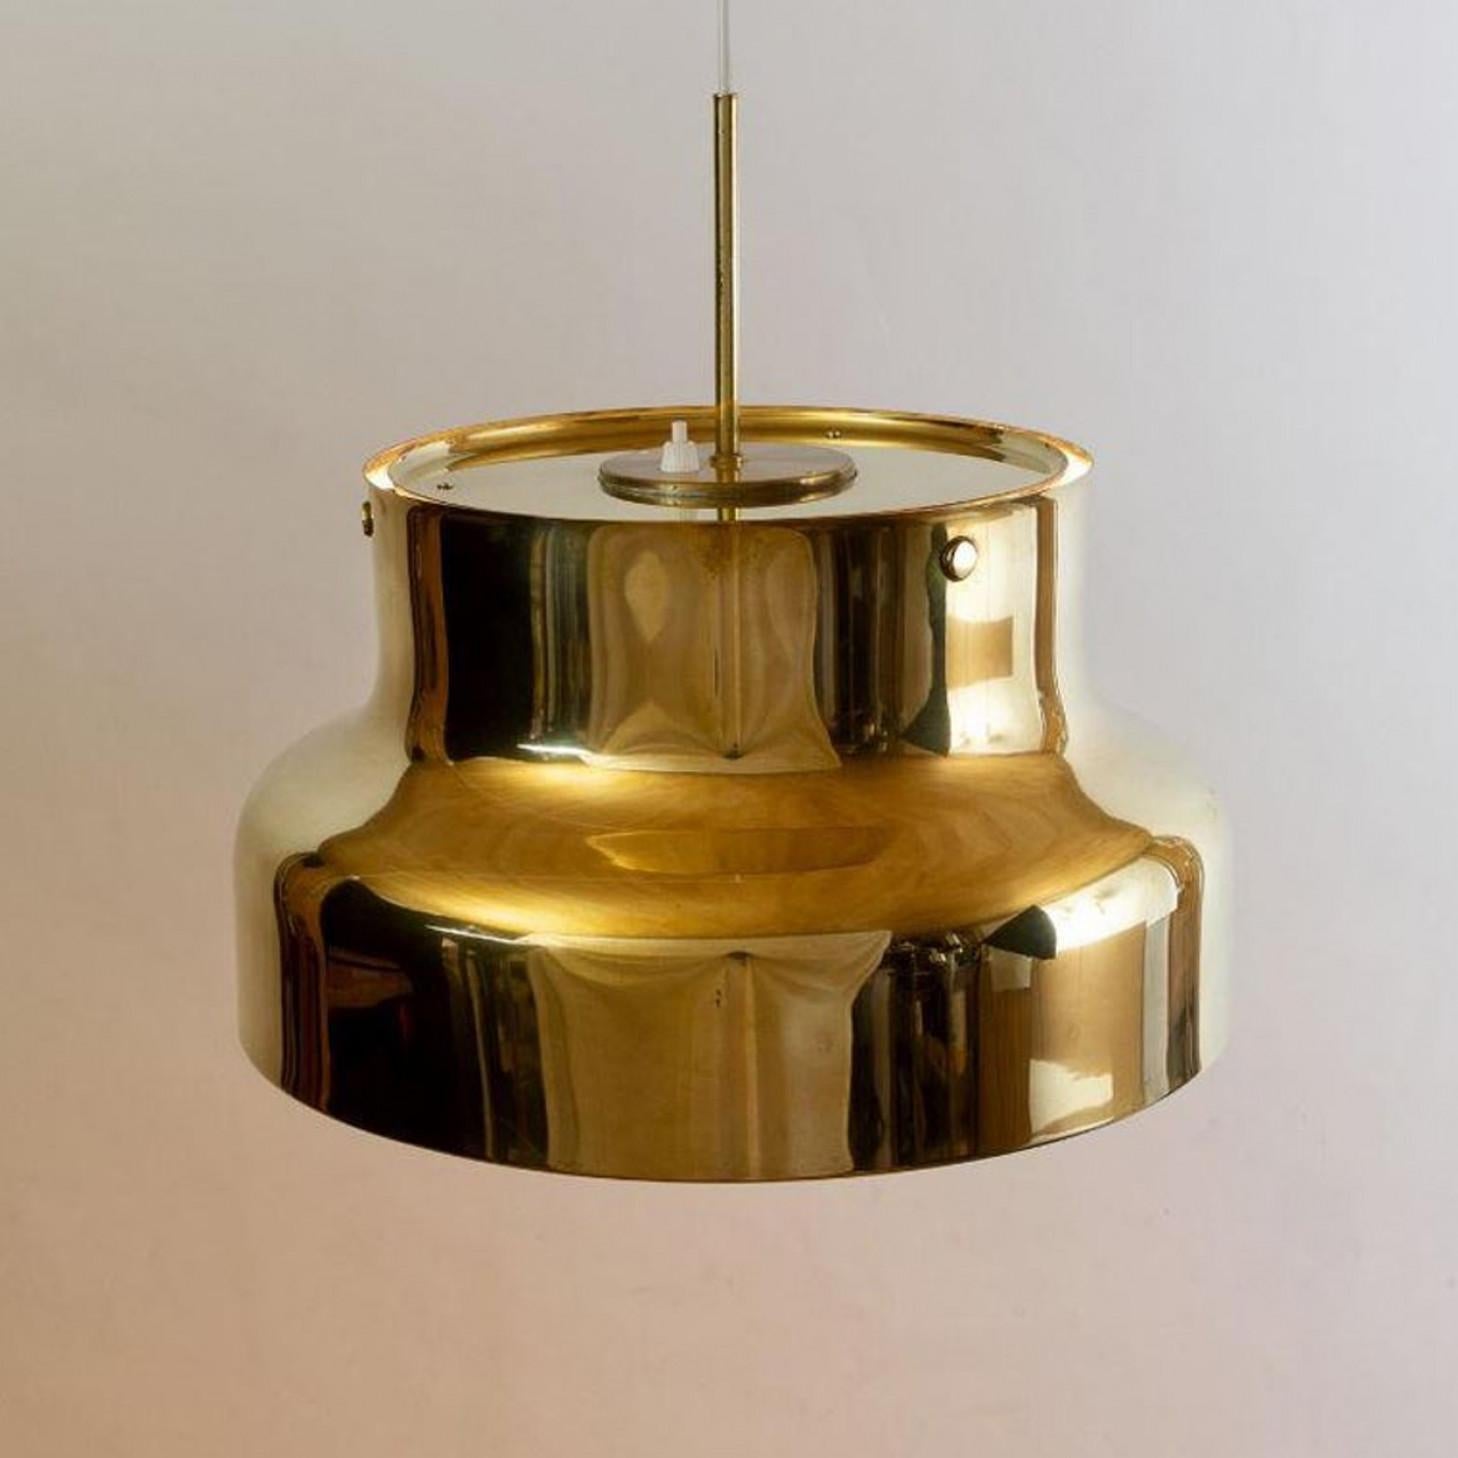 1 der 3 Bumling Pedant Lampen Produziert in Schweden von Ateljé Lyktan, 1960er Jahre Design Anders Pehrson. Durchmesser 15,8 Zoll/40 cm. Komplett mit Acryldiffusor.

In sehr gutem Vintage-Zustand. keine leichte Patina. Der angegebene Preis gilt für